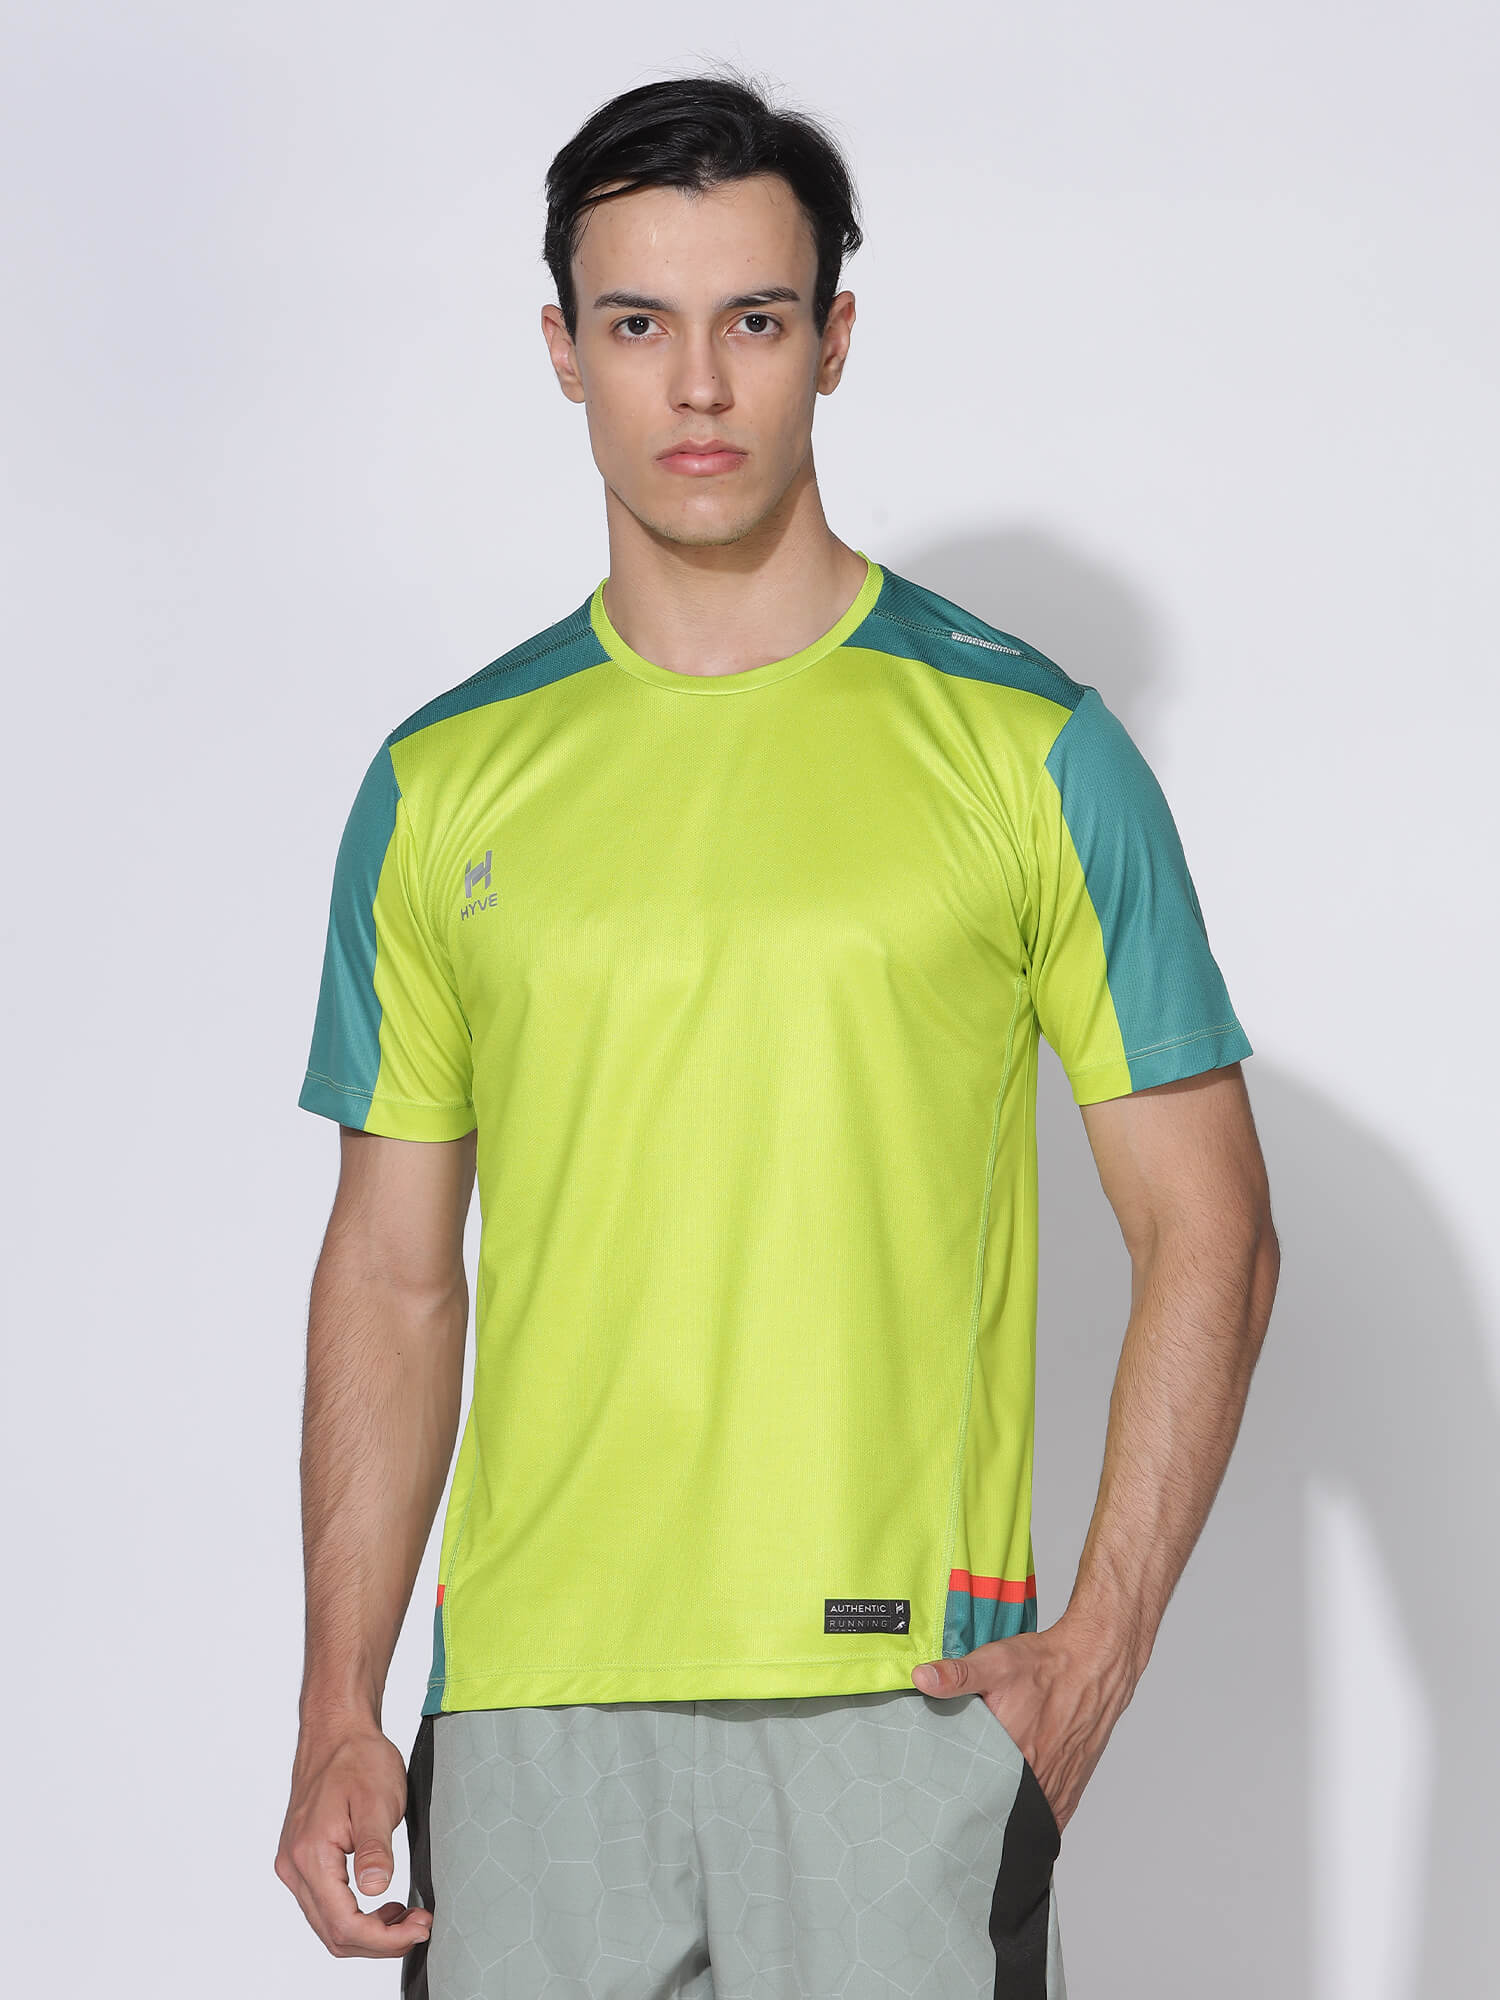 Men's Running Sports T-shirt / Jersey